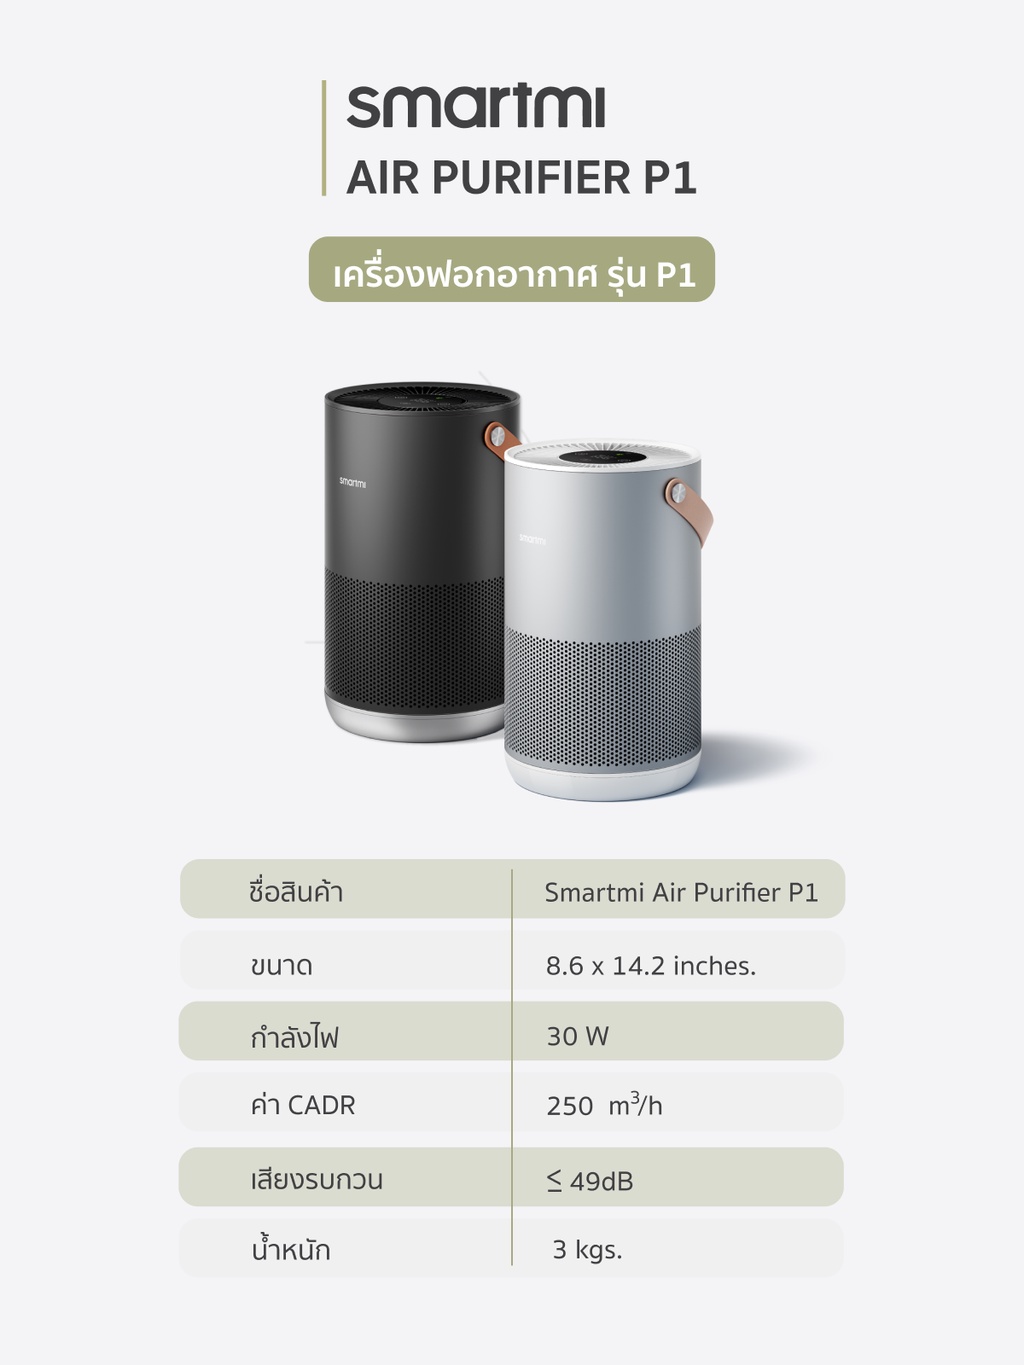 ลองดูภาพสินค้า Smartmi Air Purifier รุ่น P1 เครื่องฟอกอากาศเคลื่อนย้ายสะดวก มีหูหิ้ว ทำจากอลูมิเนียม เซ็นเซอร์คู่ดักจับทั้ง PM2.5/PM10 (กรองละเอียดและกรองหยาบในตัวเดียว) จาก บริษัท Xiaomi ออกใบกำกับภาษีได้